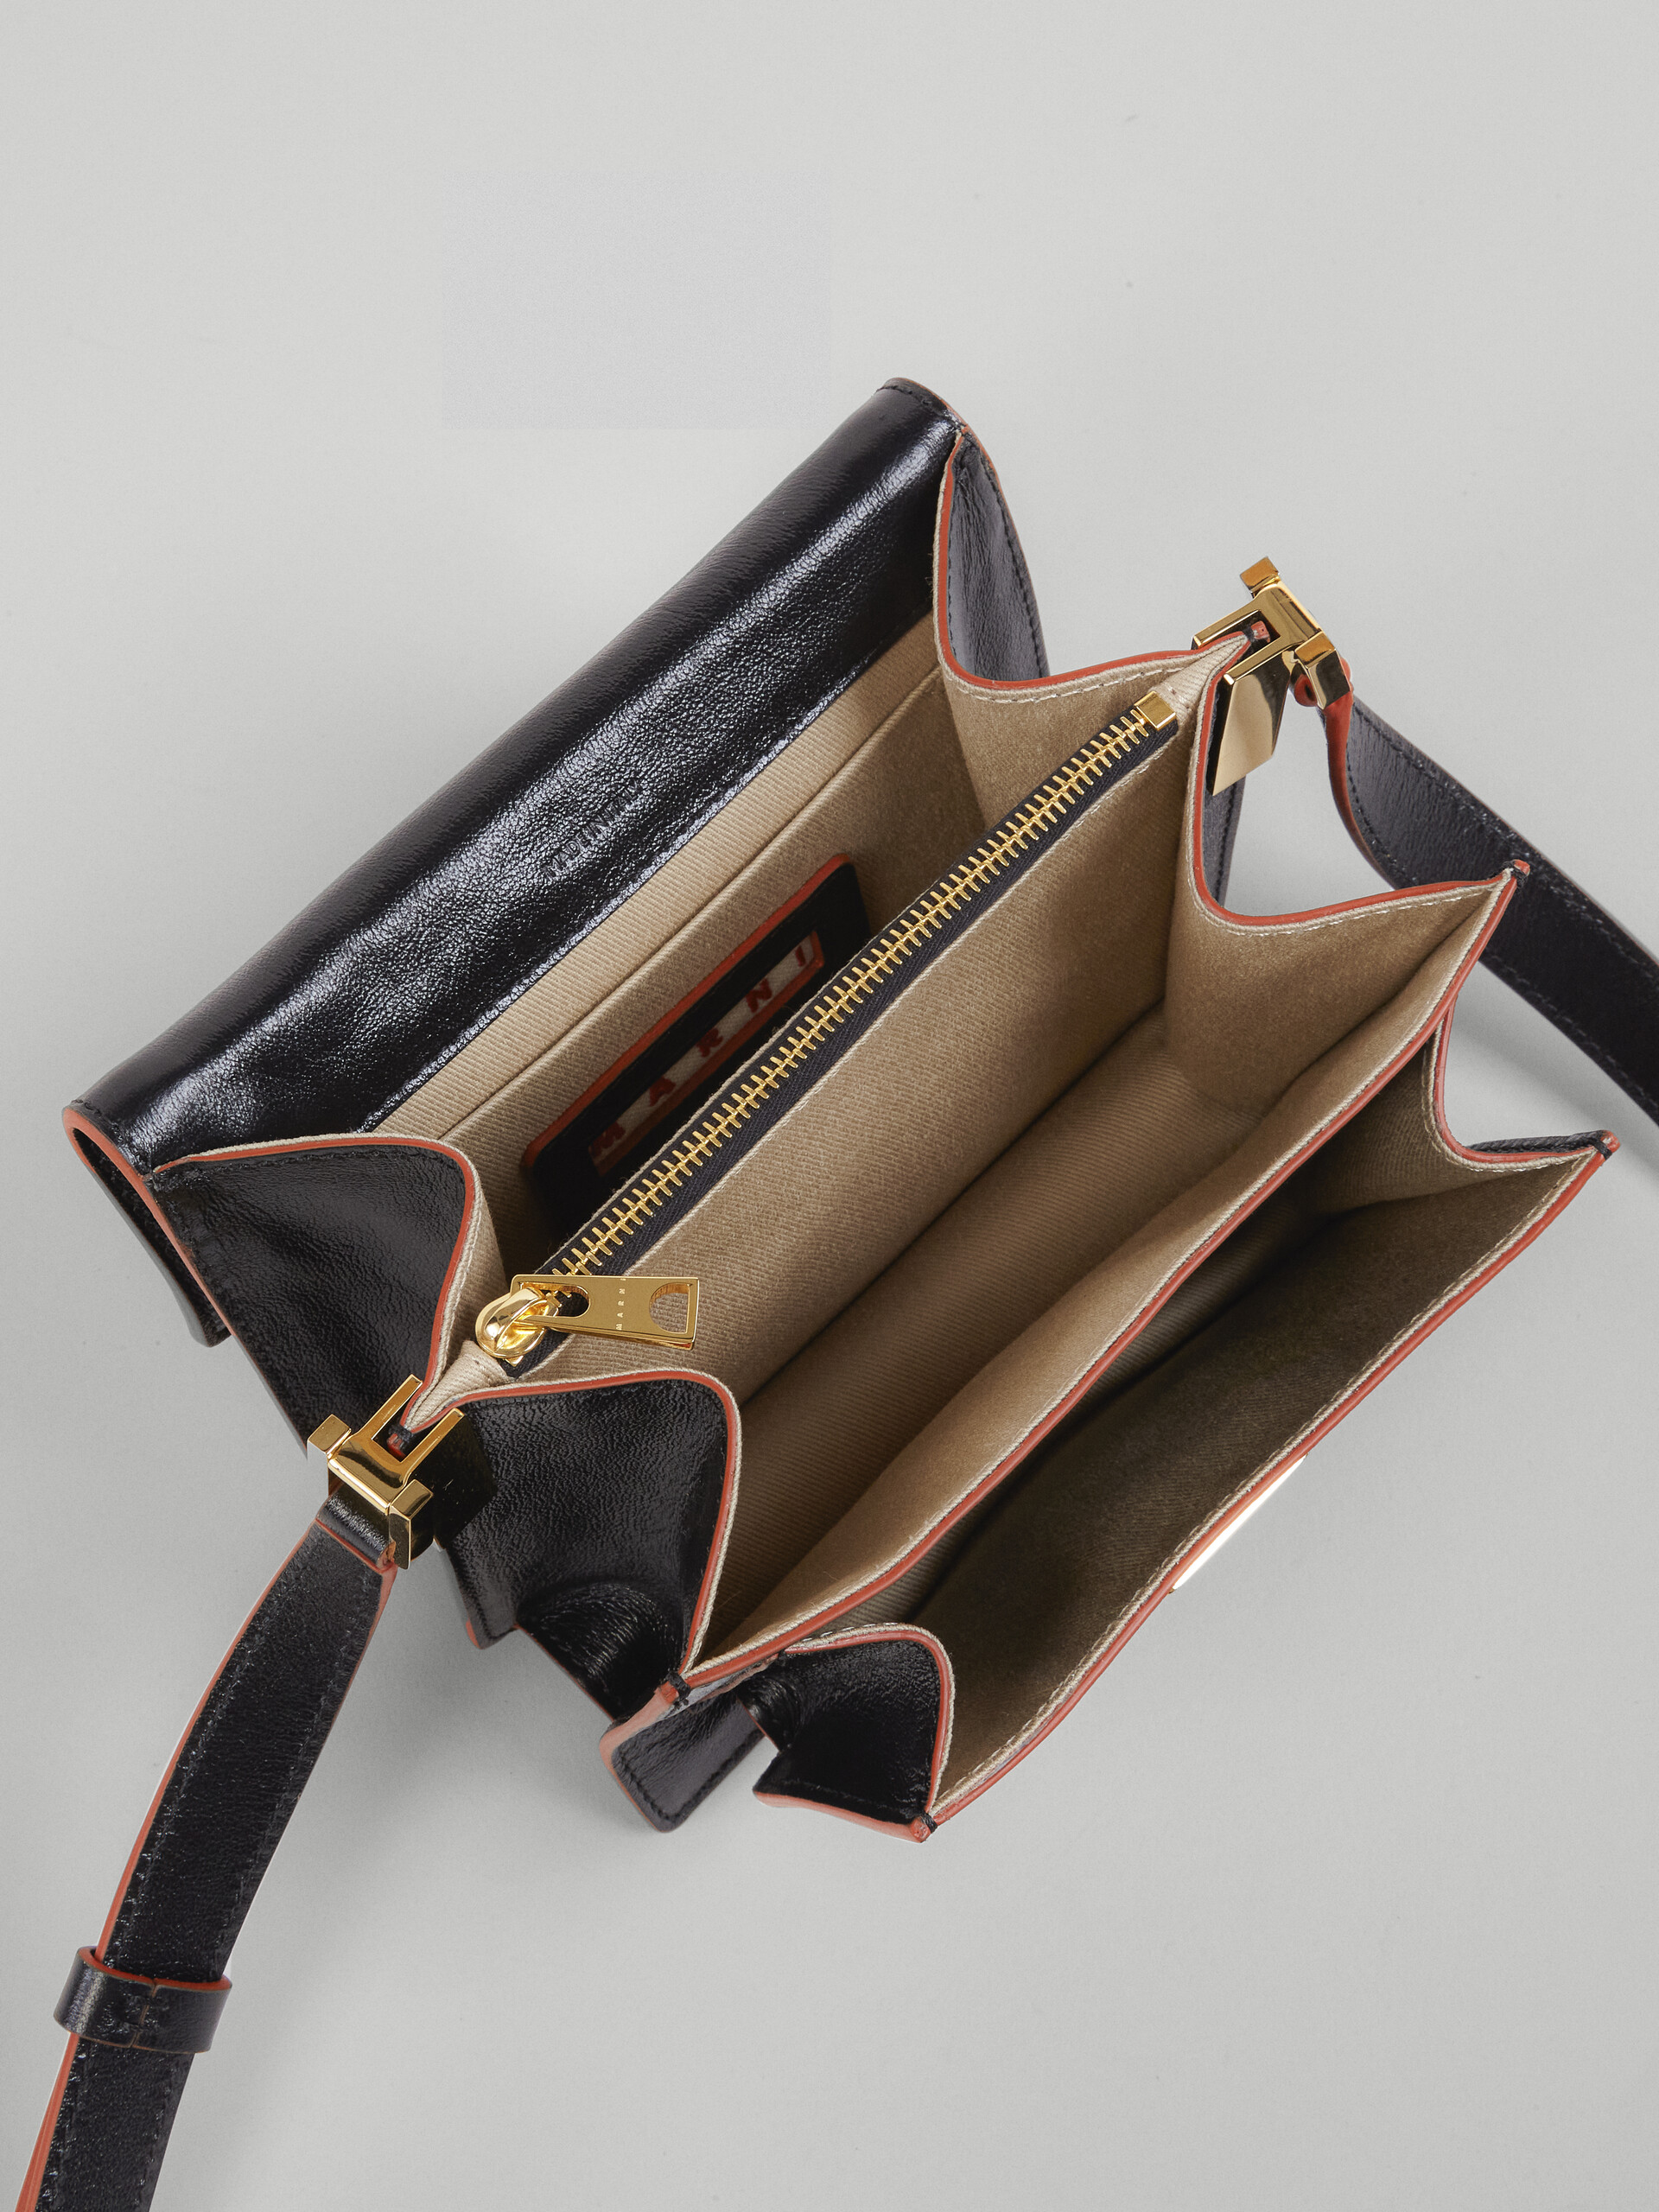 Mini sac TRUNK SOFT en veau foulonné noir - Sacs portés épaule - Image 5